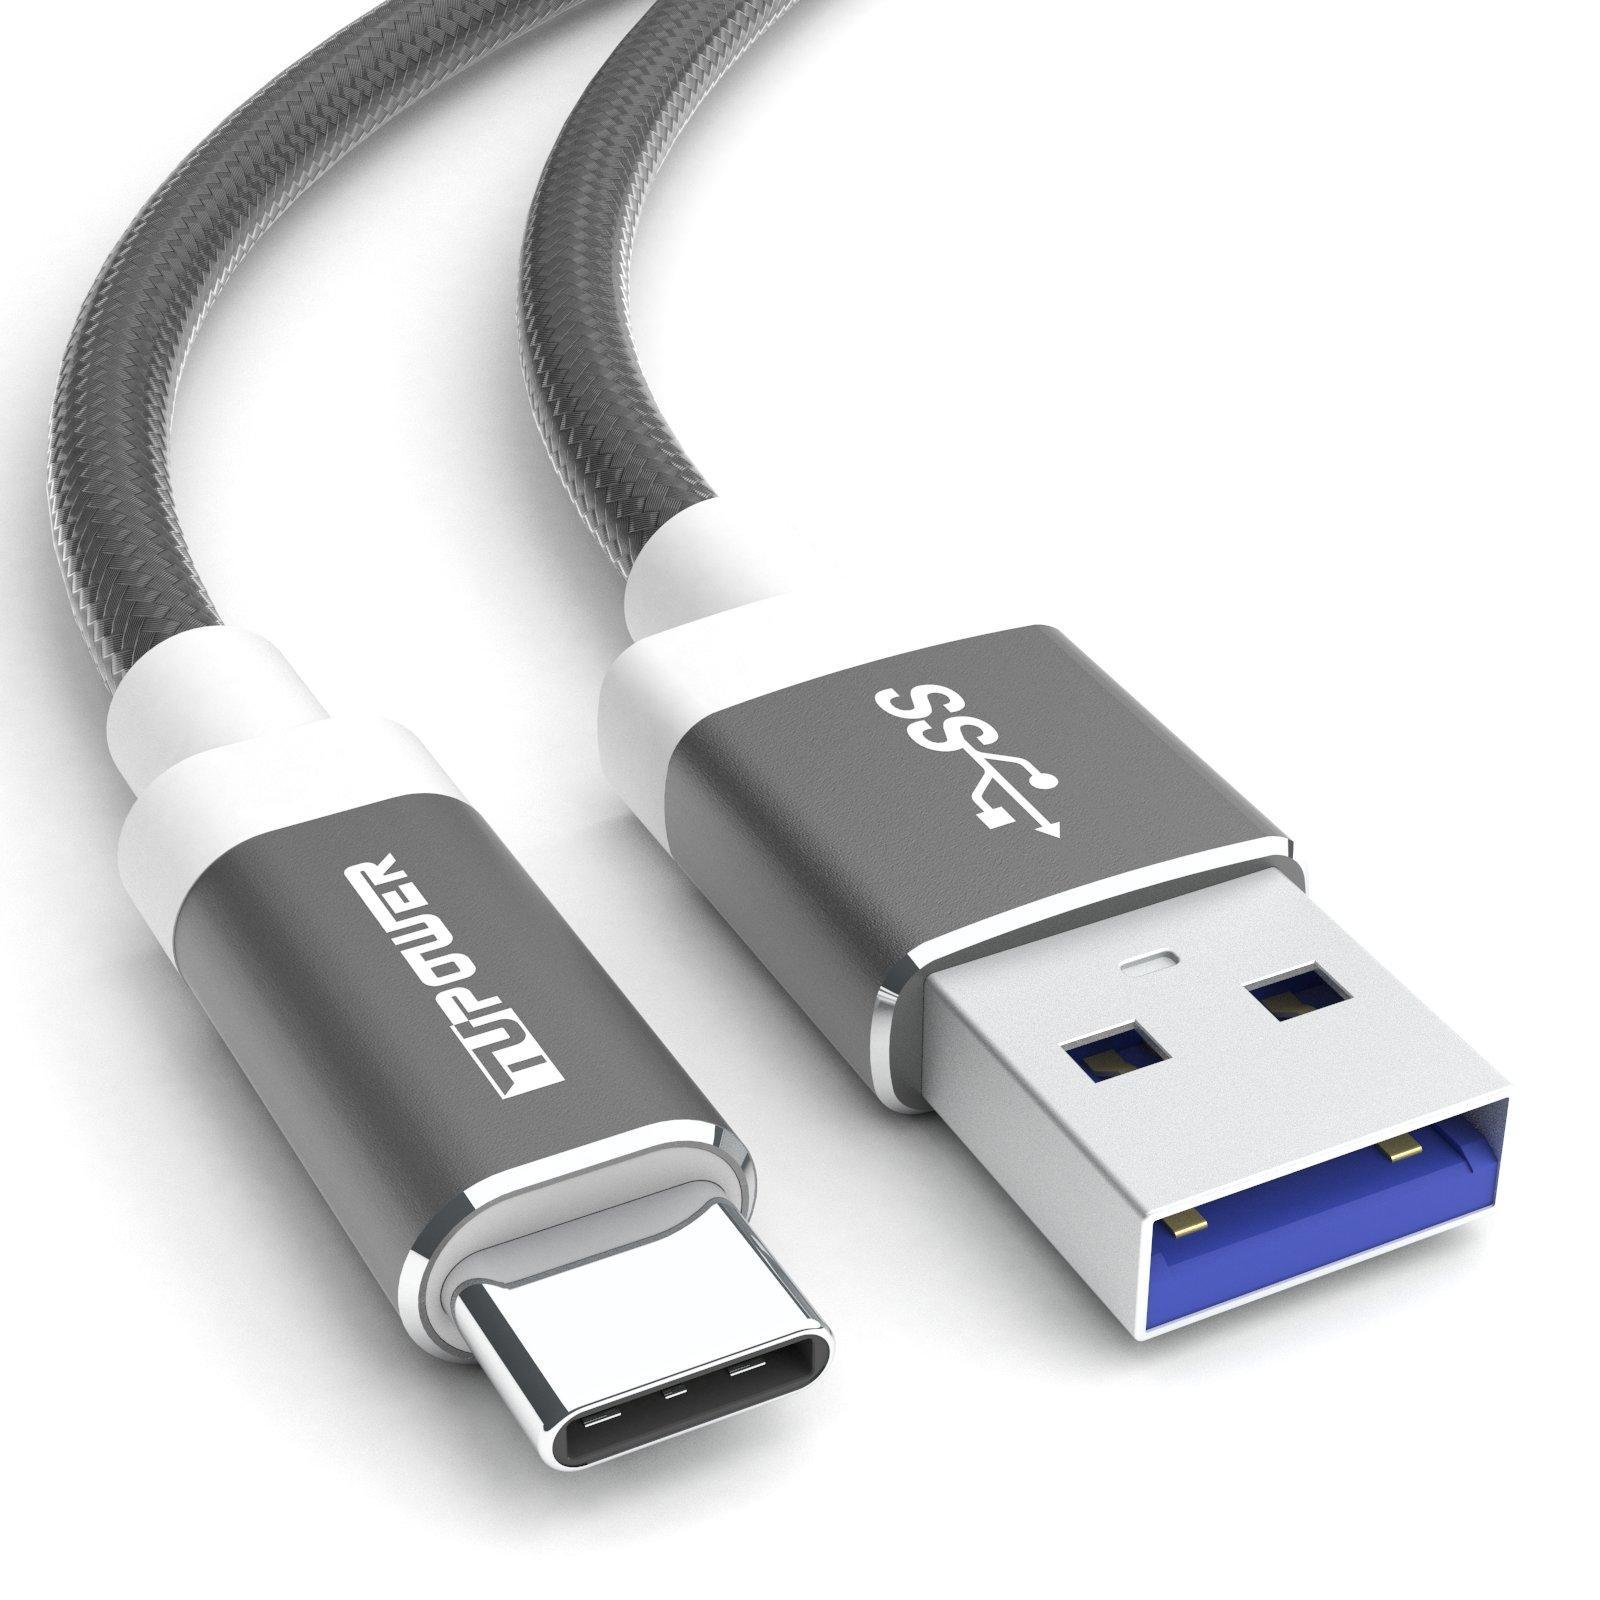 TUPOWER K02 USB C Samsung Handy C USB Kabel Datenkabel Kabel 1m QuickCharge USB 3.0 auf Ladekabel für A